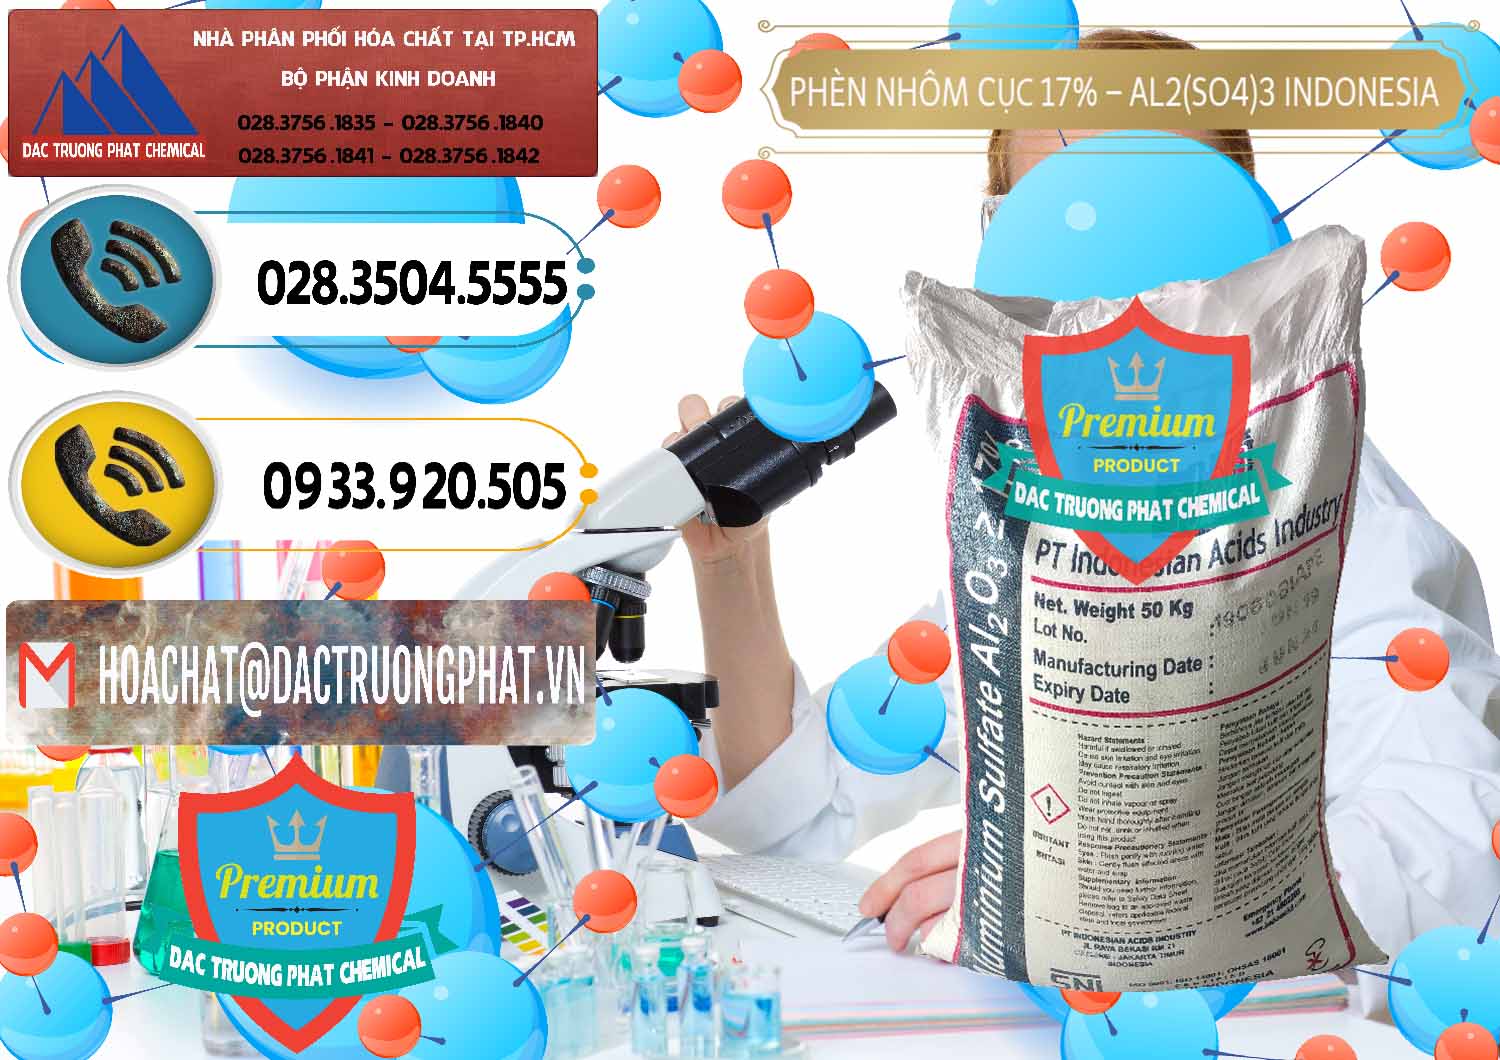 Nhập khẩu ( bán ) Phèn Nhôm Cục - Al2(SO4)3 17% bao 50kg Indonesia - 0113 - Đơn vị chuyên kinh doanh và phân phối hóa chất tại TP.HCM - hoachatdetnhuom.vn